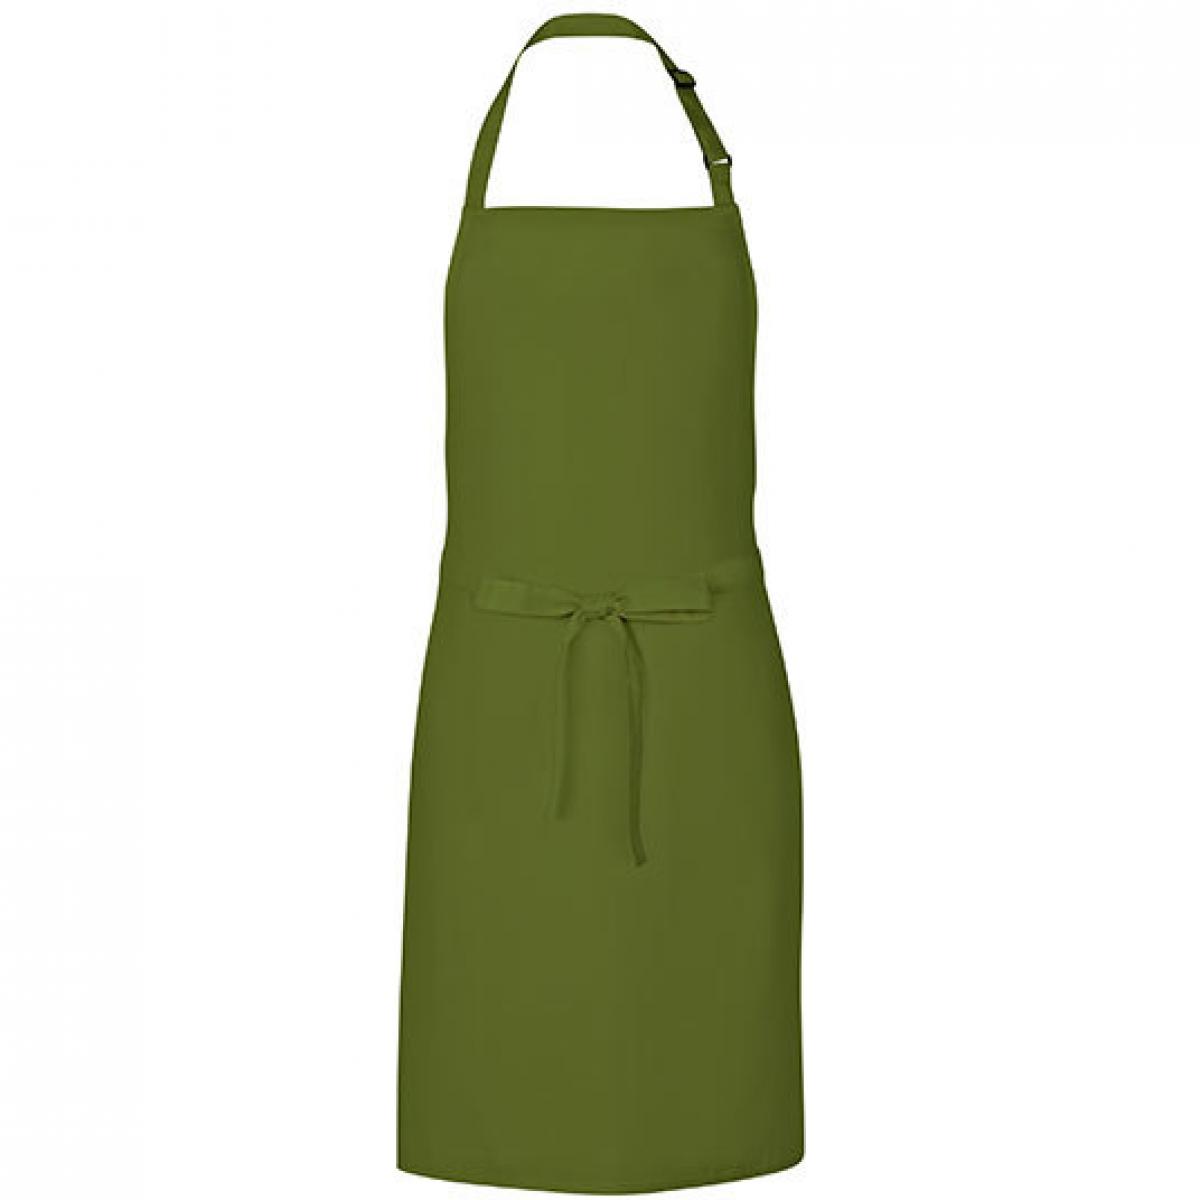 Hersteller: Link Kitchen Wear Herstellernummer: MS8572 Artikelbezeichnung: Multi Apron - 72 x 85 cm - Waschbar bis 60 °C Farbe: Olive (ca. Pantone 378)